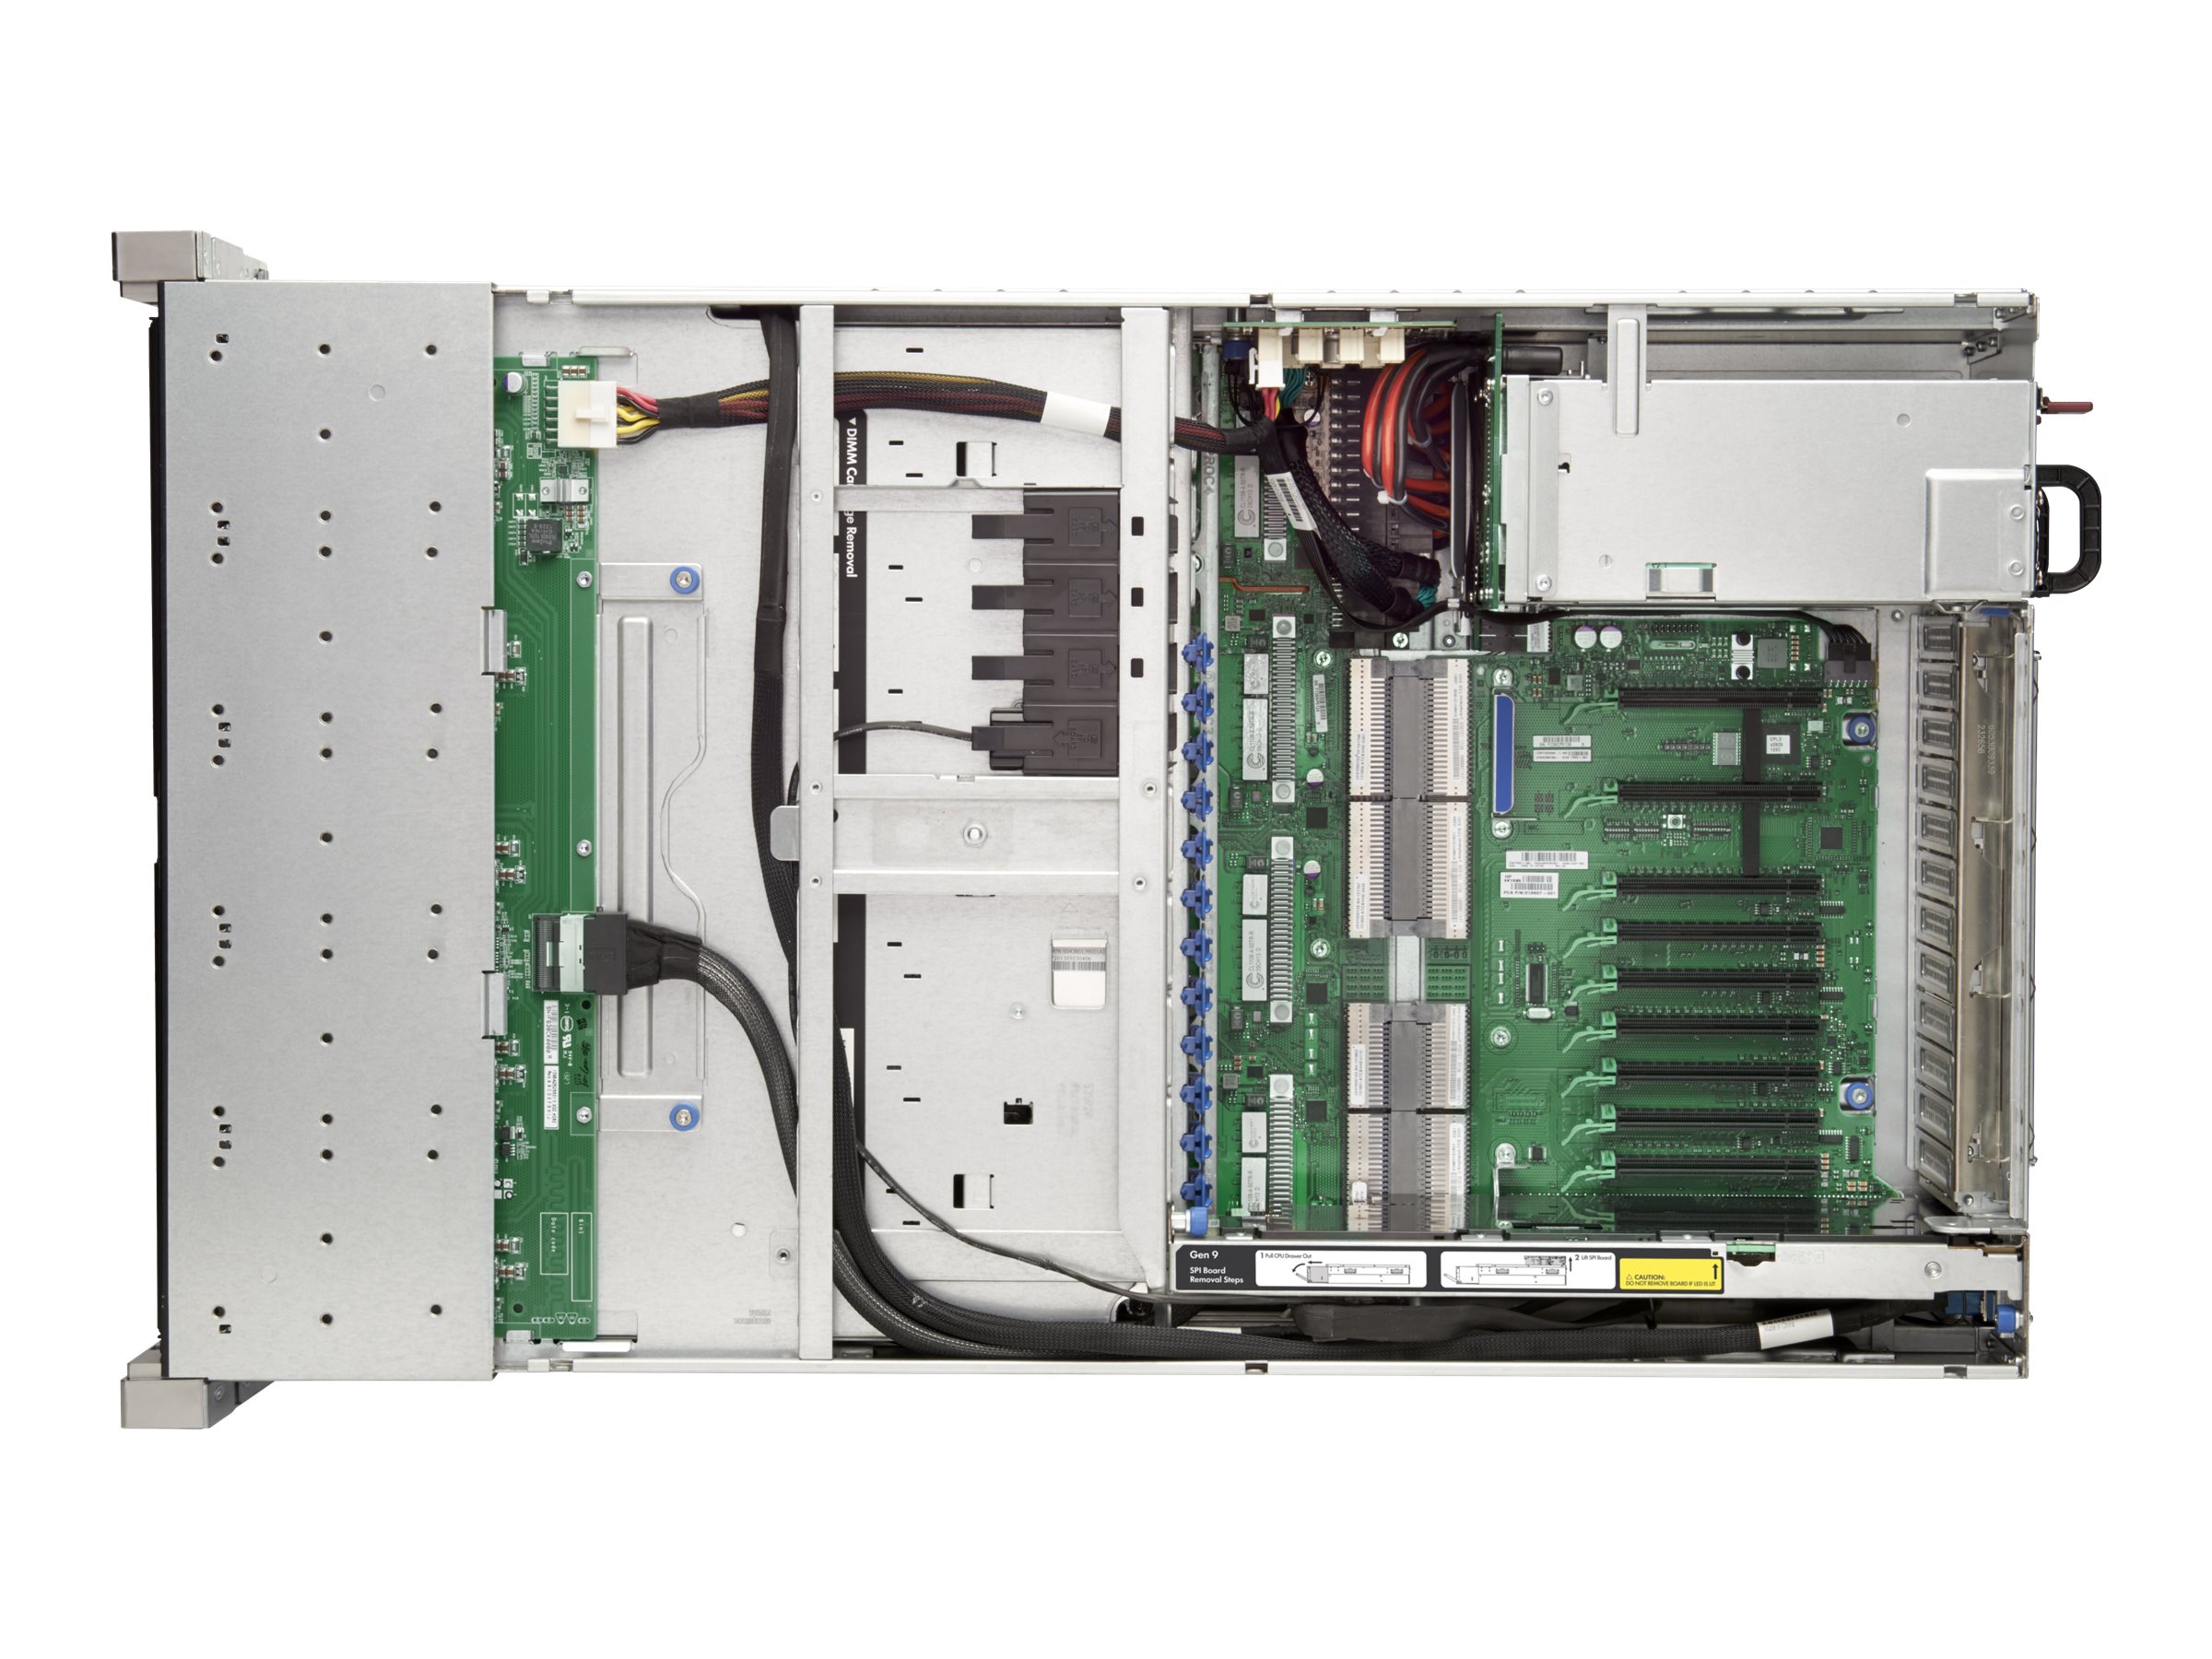 HPE ProLiant DL580 Gen9 High Performance - Serveur - Montable sur rack - 4U - à 4 voies - 4 x Xeon E7-8890V3 / 2.5 GHz - RAM 256 Go - SAS - hot-swap 2.5" baie(s) - aucun disque dur - Matrox G200 - 10 Gigabit Ethernet - moniteur : aucun - 793312-B21 - Serveurs rack